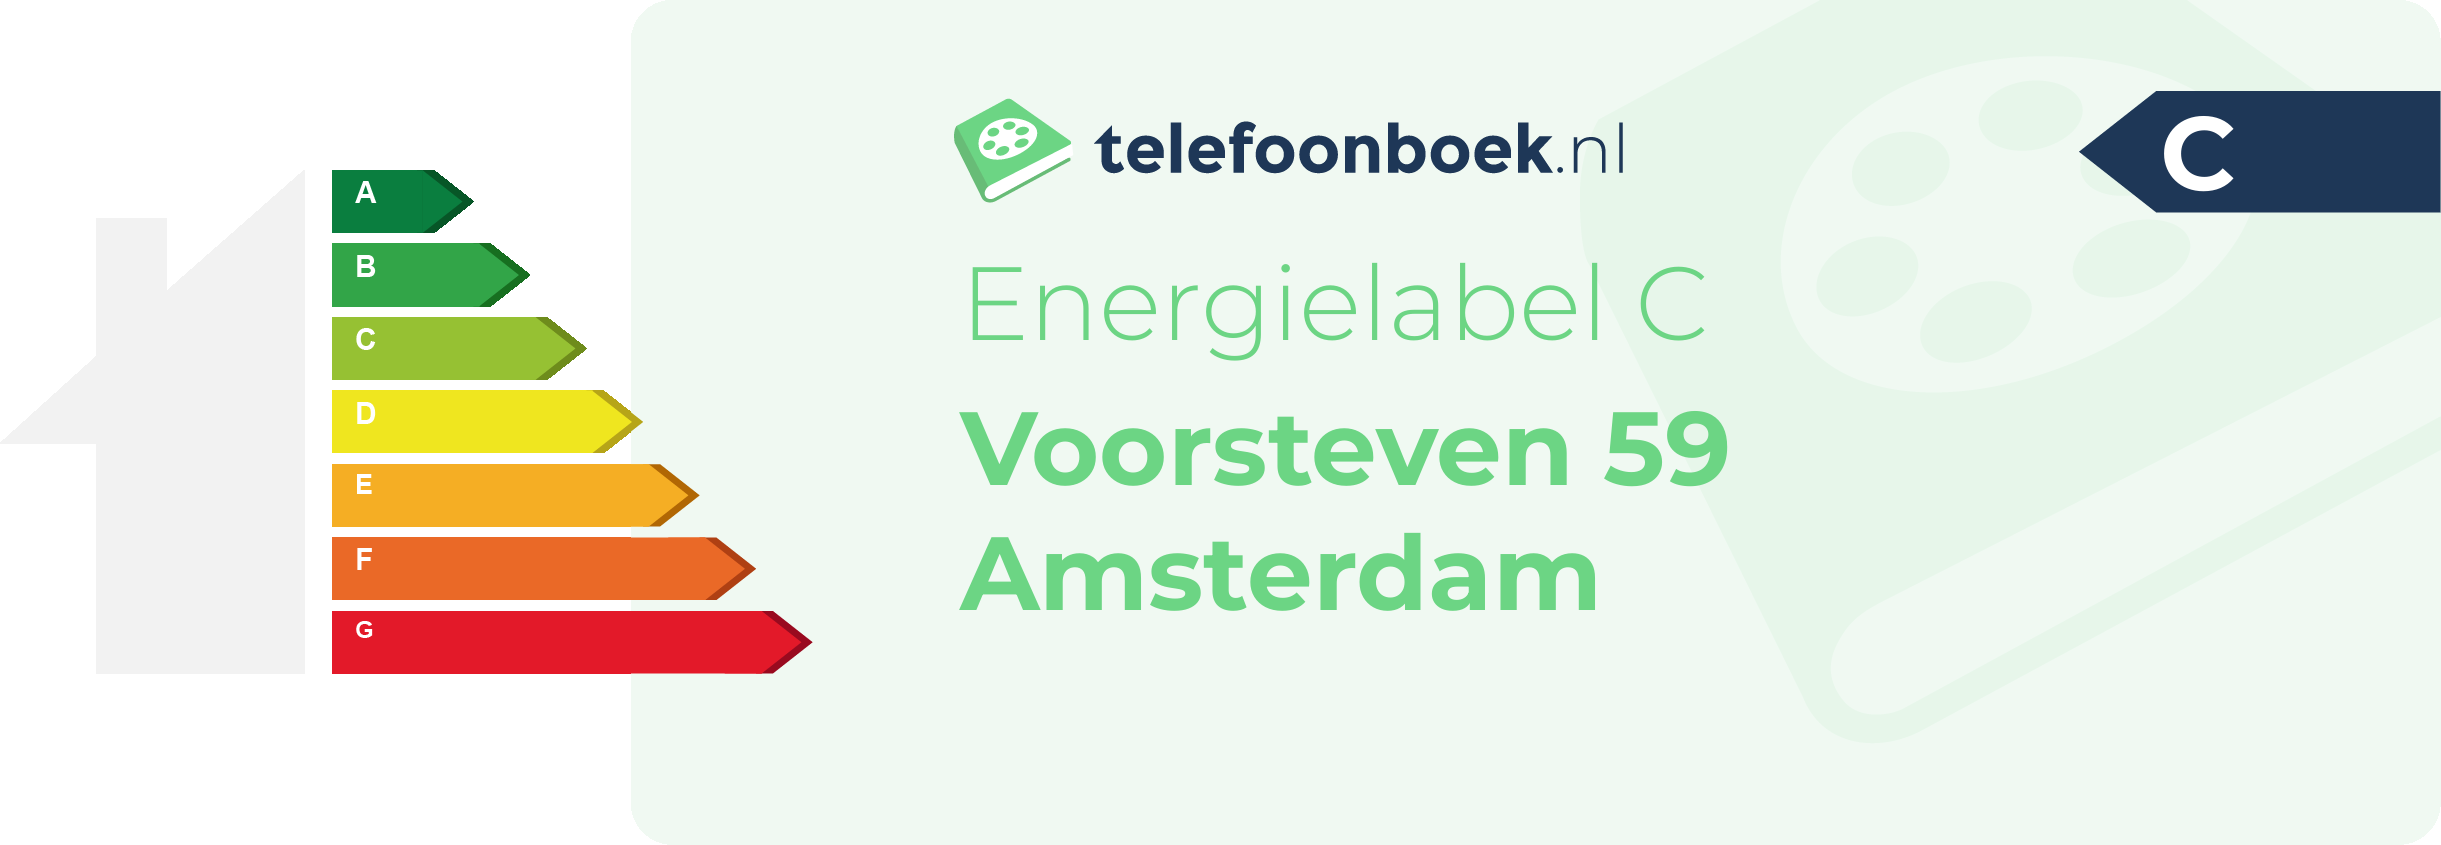 Energielabel Voorsteven 59 Amsterdam